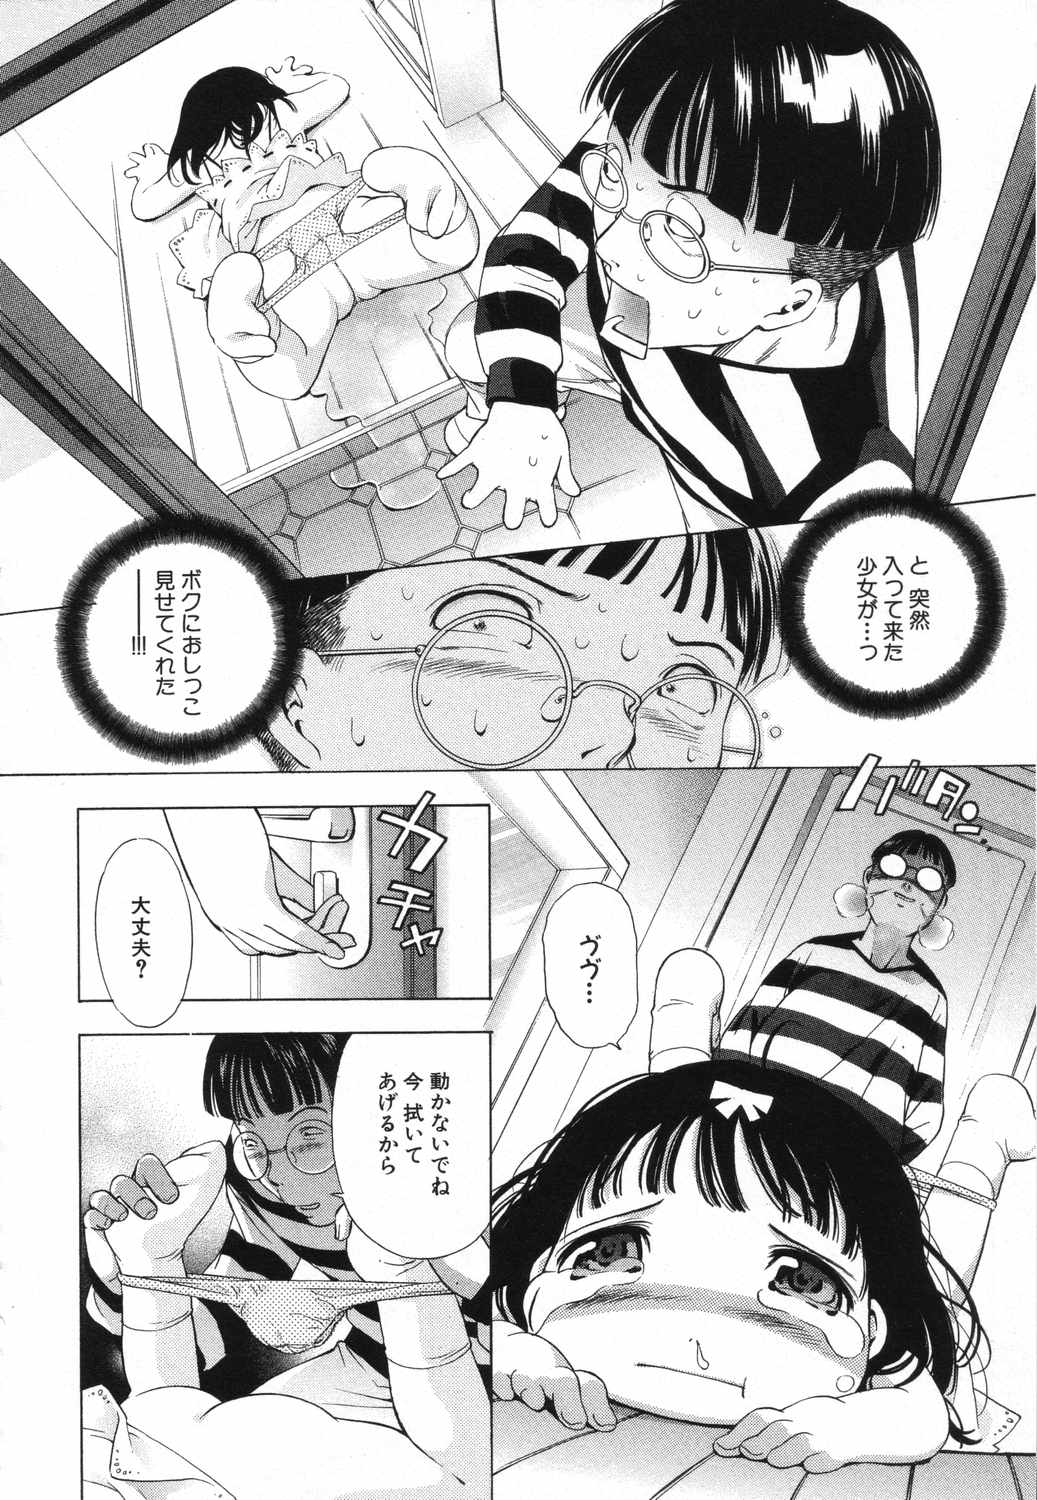 [Anthology] LOCO vol.5 Aki no Omorashi Musume Tokushuu page 27 full